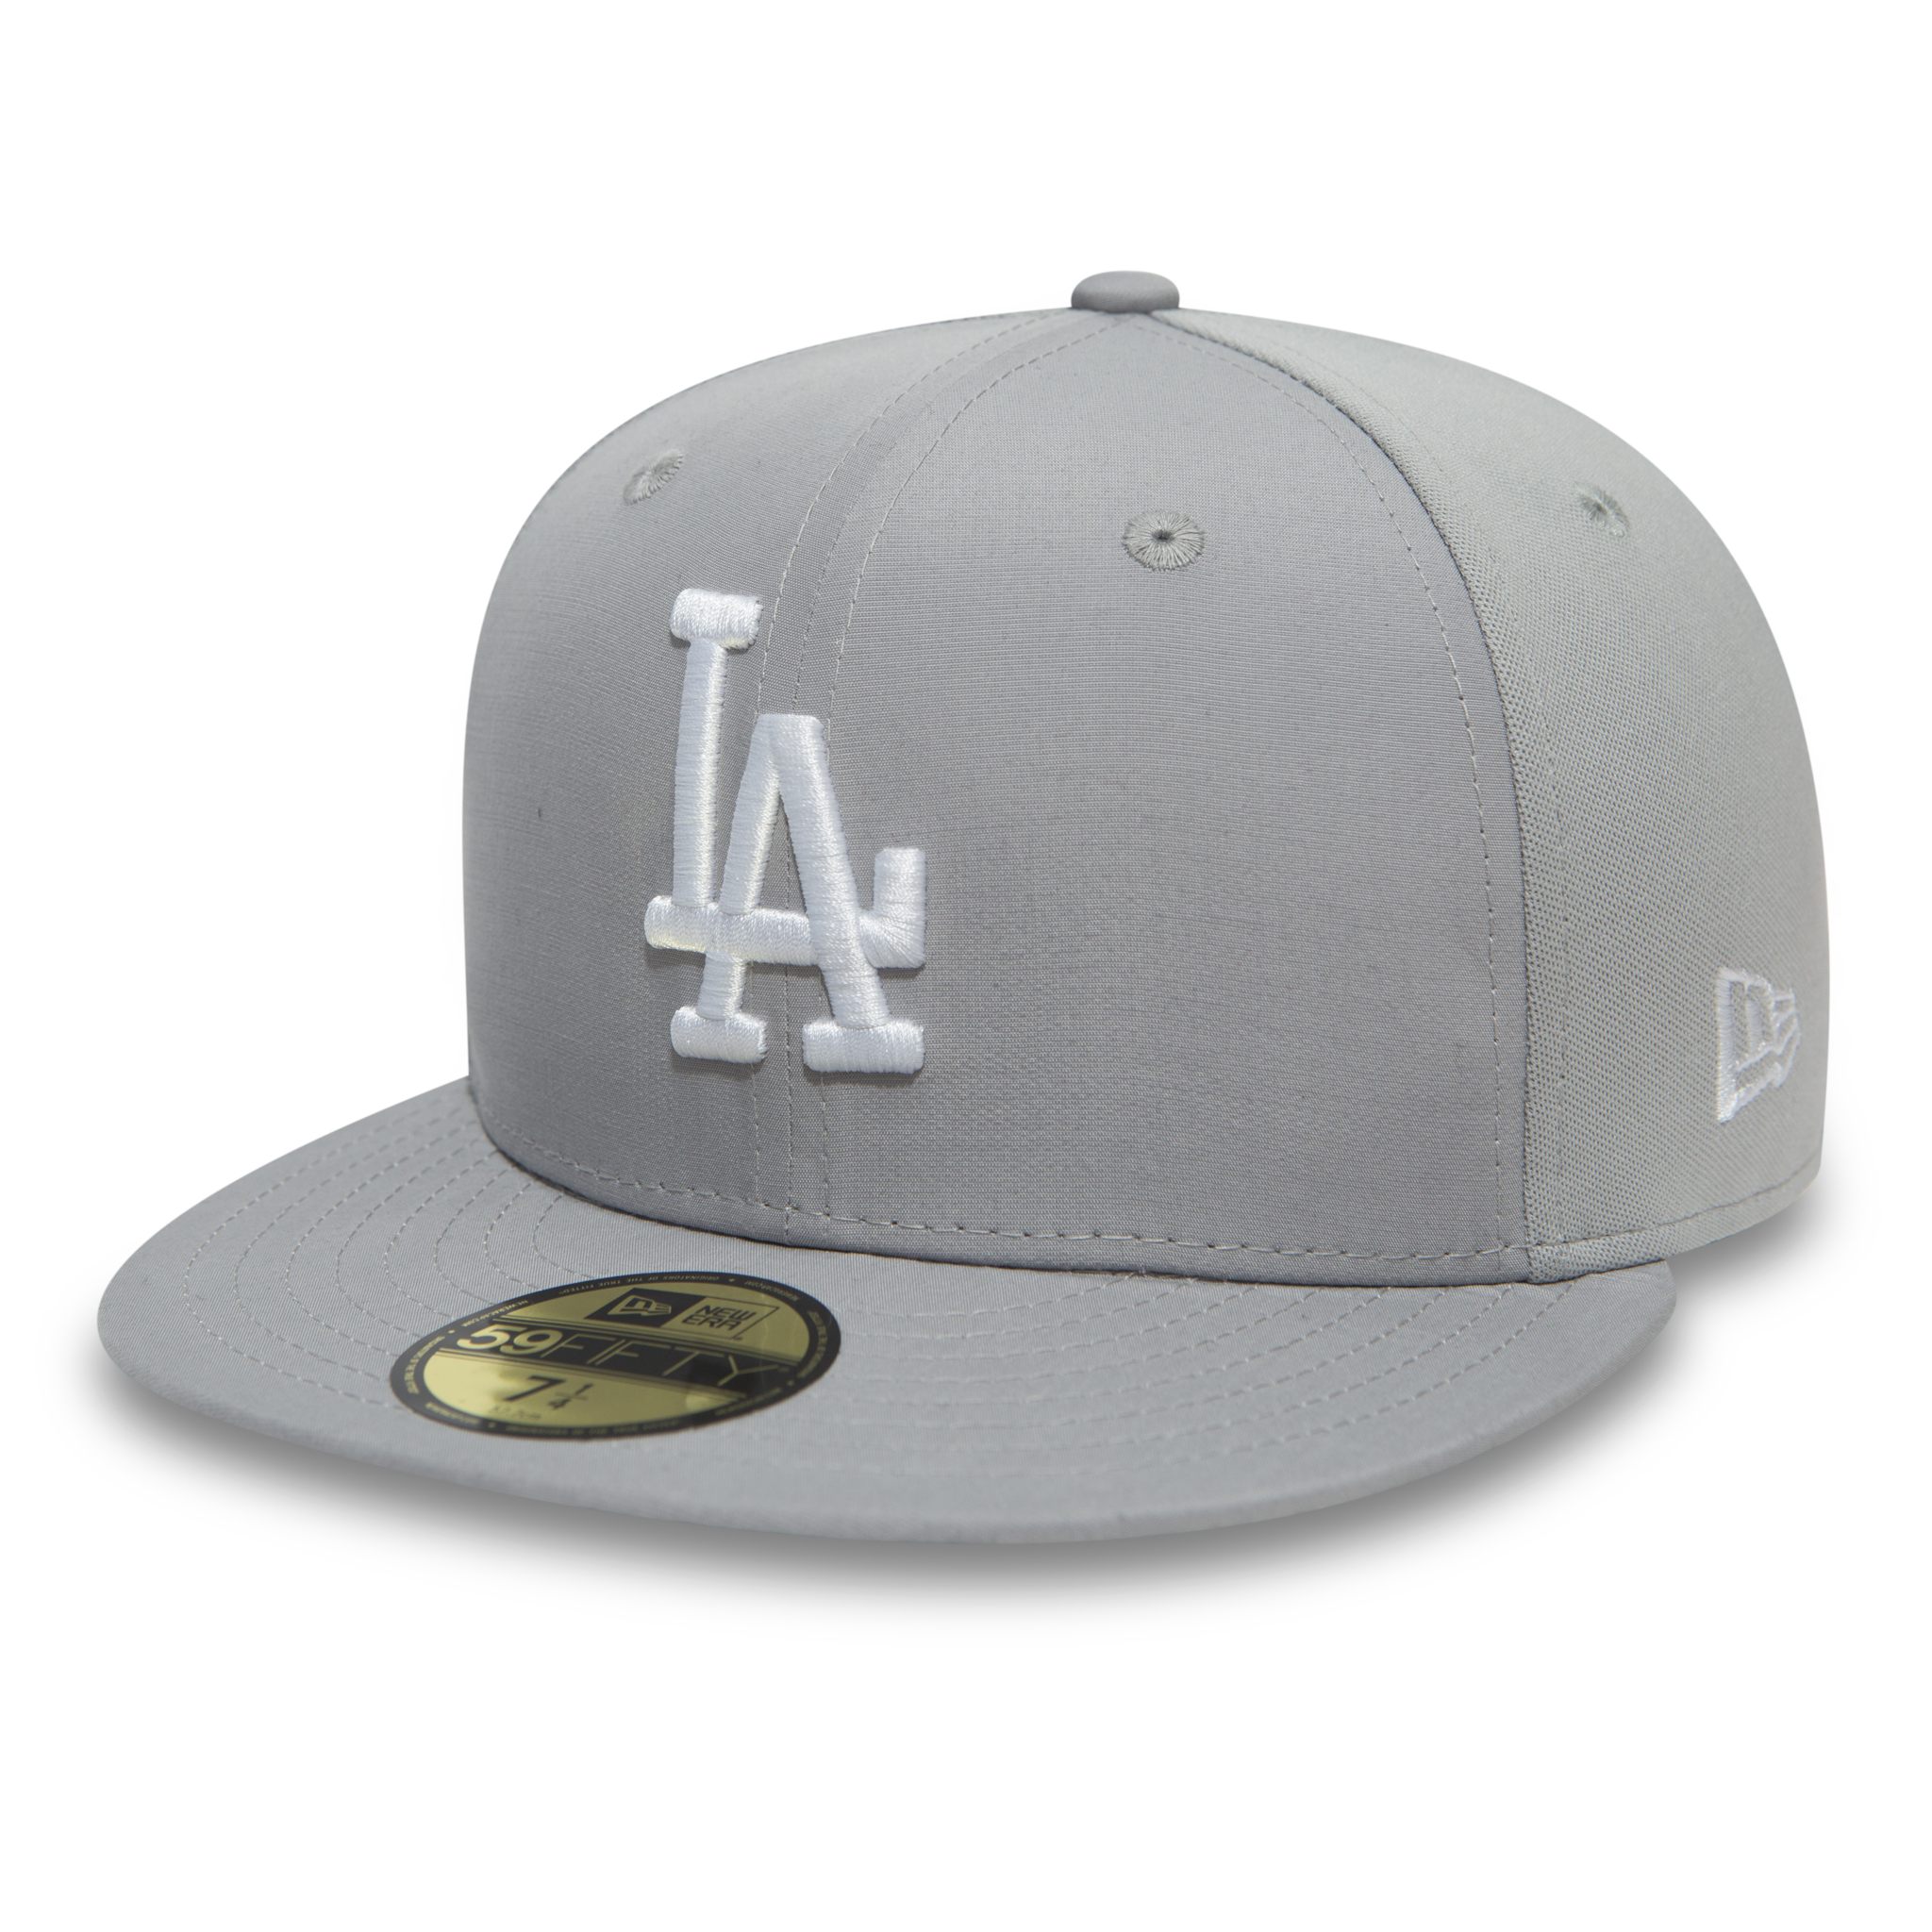 Casquette 59FIFTY graphite des Dodgers de Los Angeles